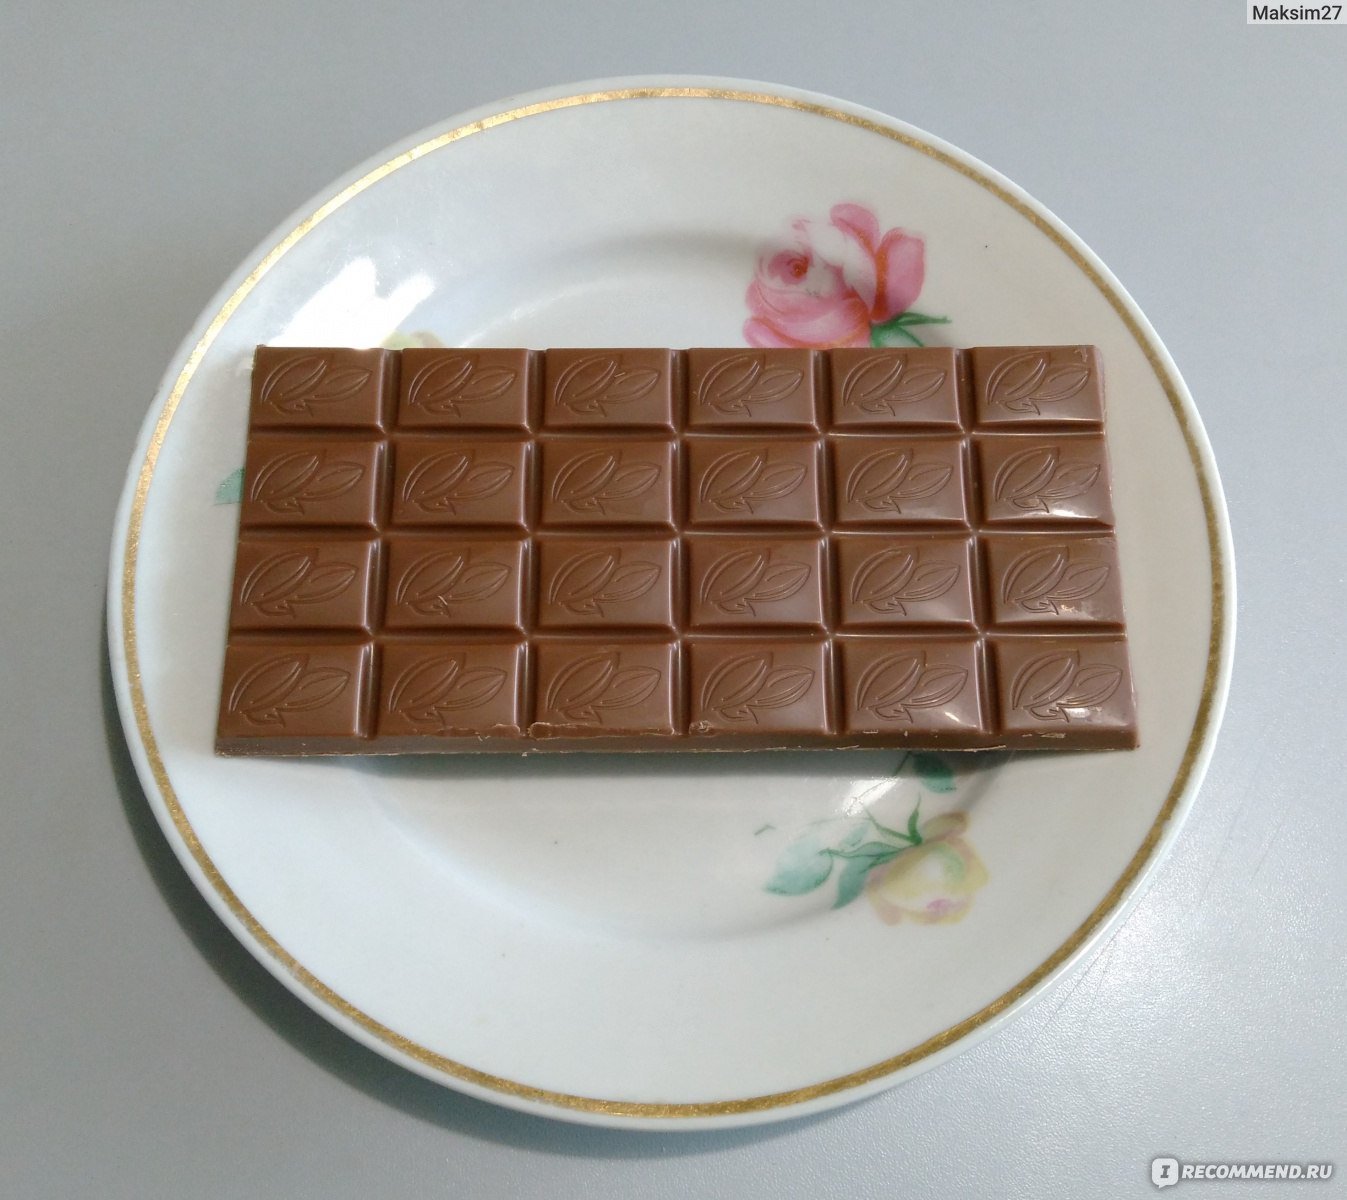 Недорогой шоколад. Недорогие шоколадки. Шоколадки простые. Дешевый шоколад. Вкусные и недорогие шоколадки.